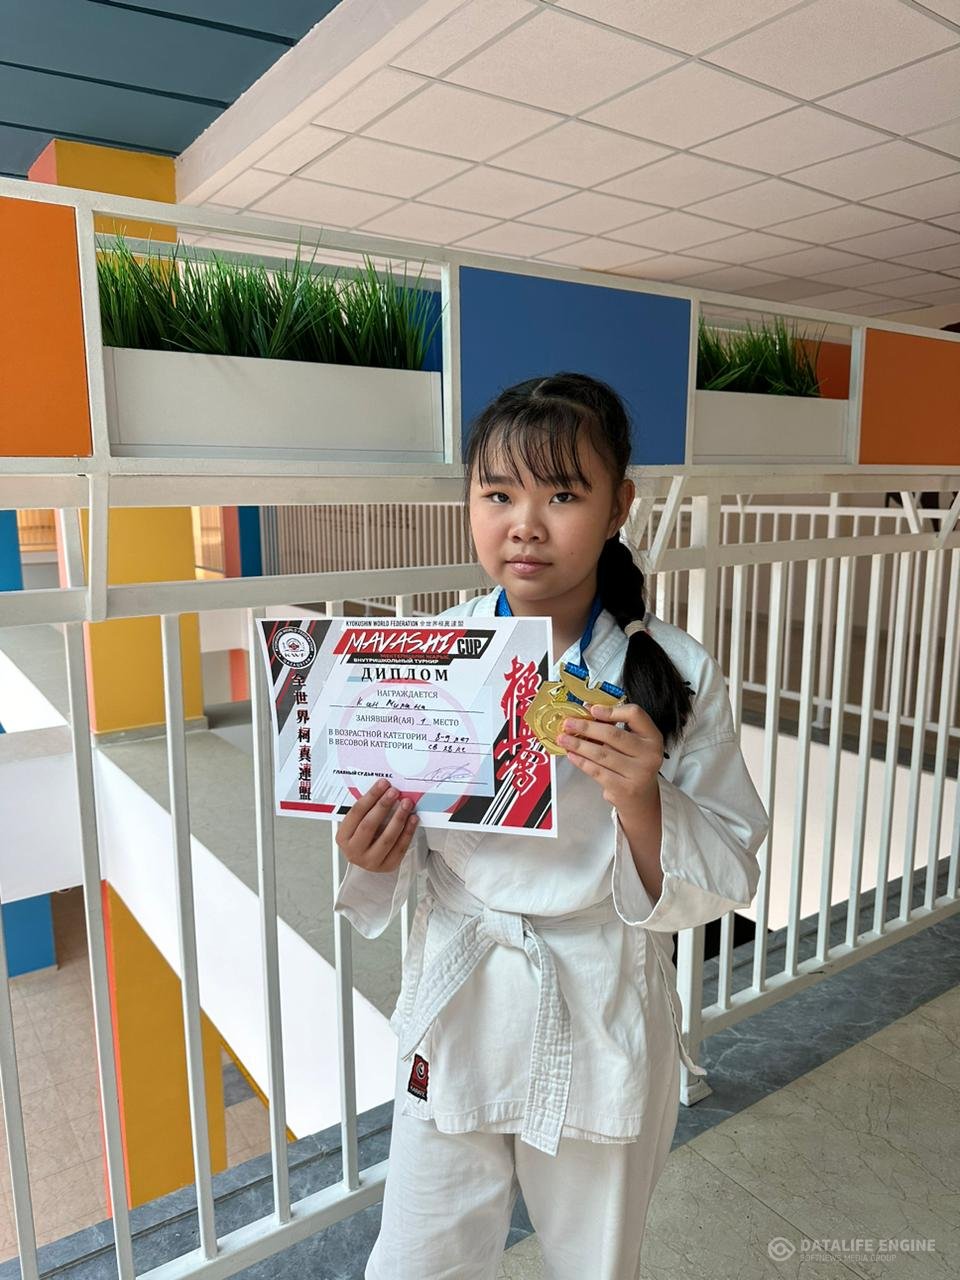 Кан Милана ученица 3Б класса, занявшая 1-место по каратэ в весовой категории 8-9 лет! Поздравляем!